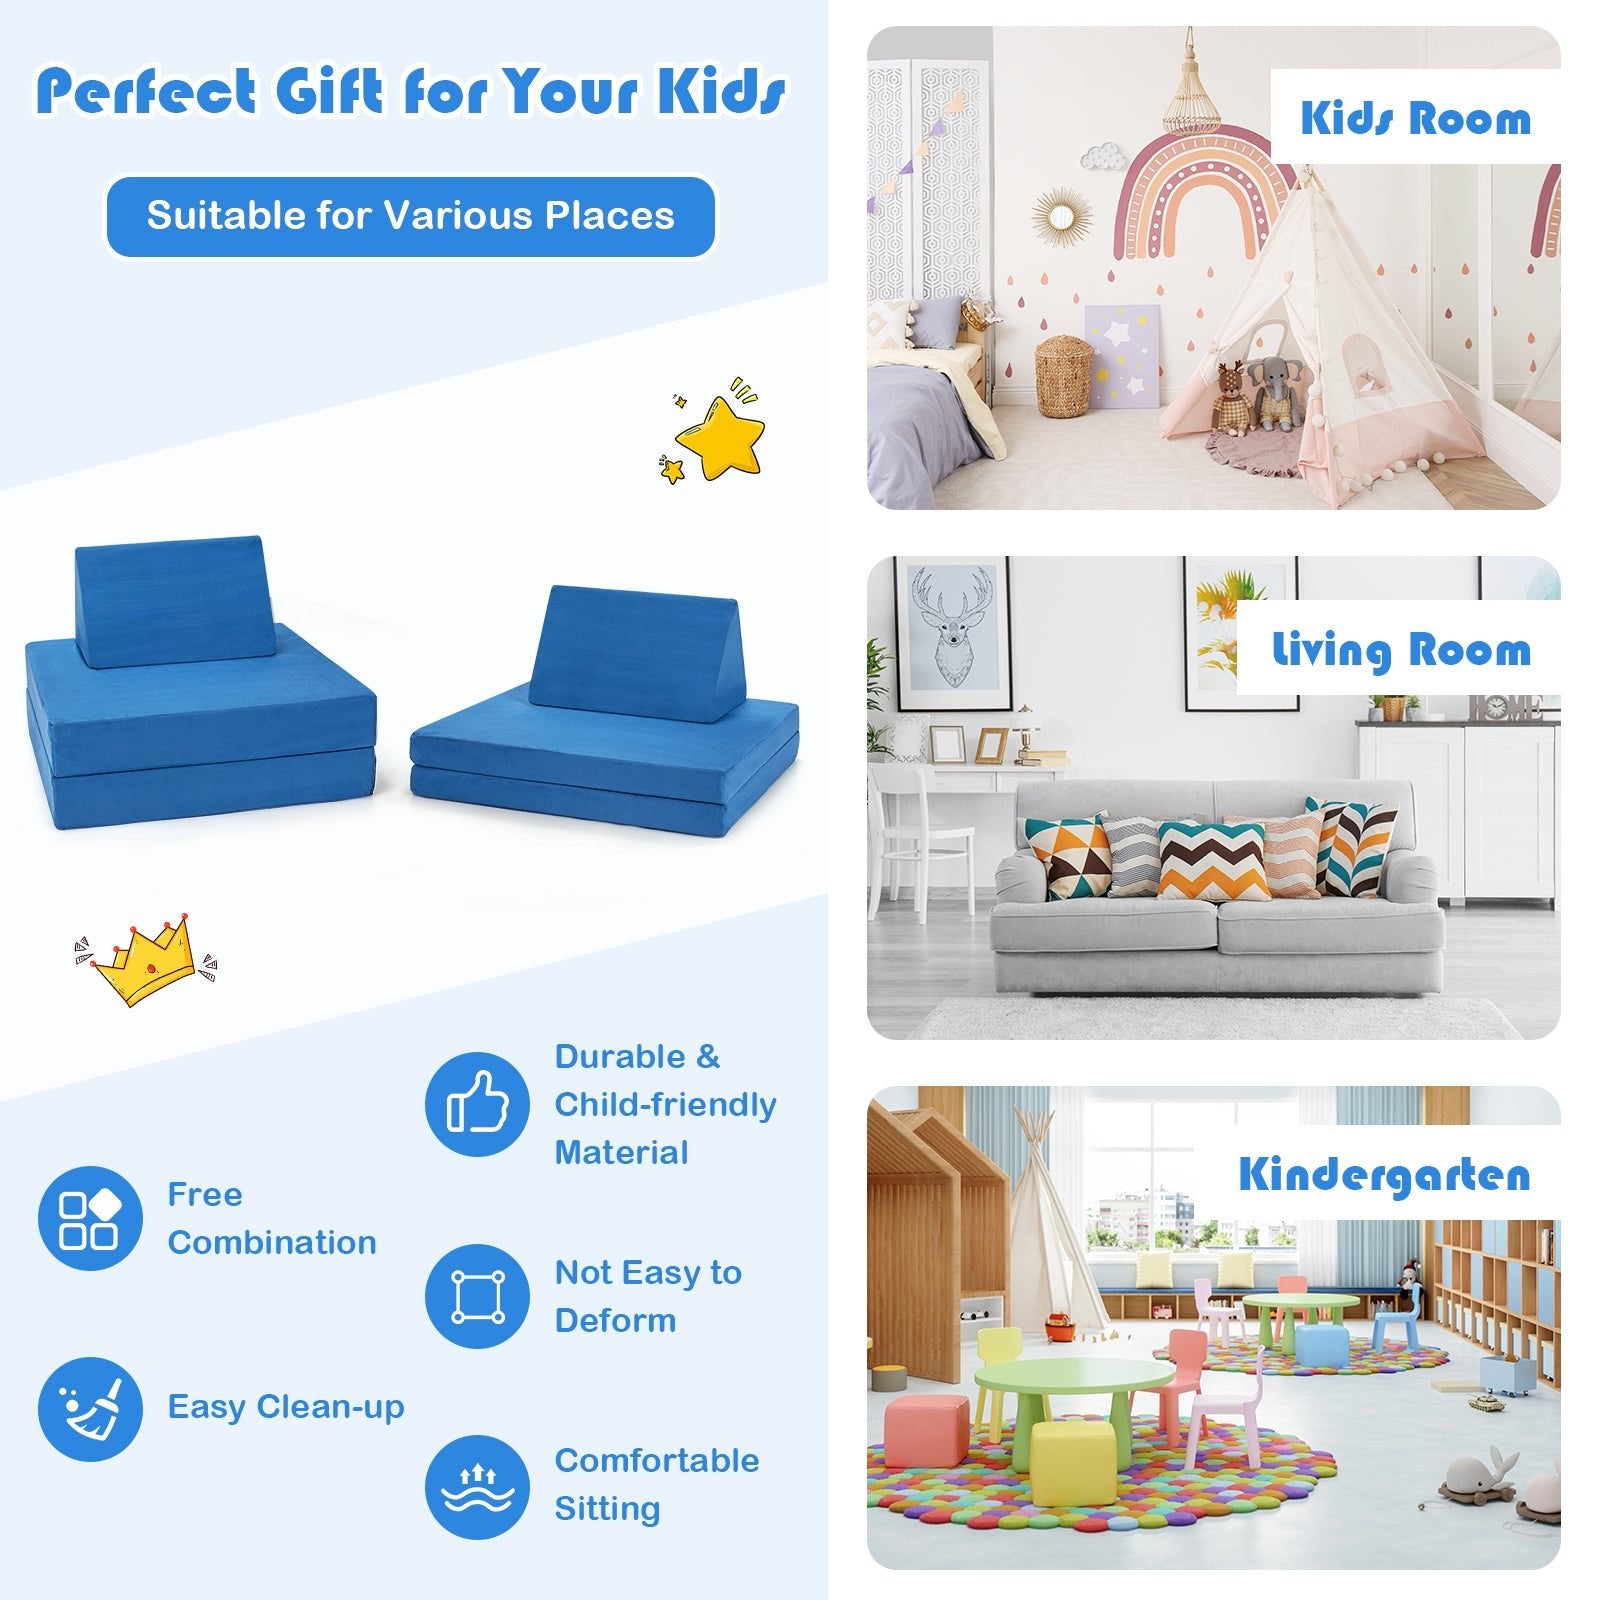 4-Piece Convertible Kids Couch Bundle - Blue - Includes 2 Foldable Mats